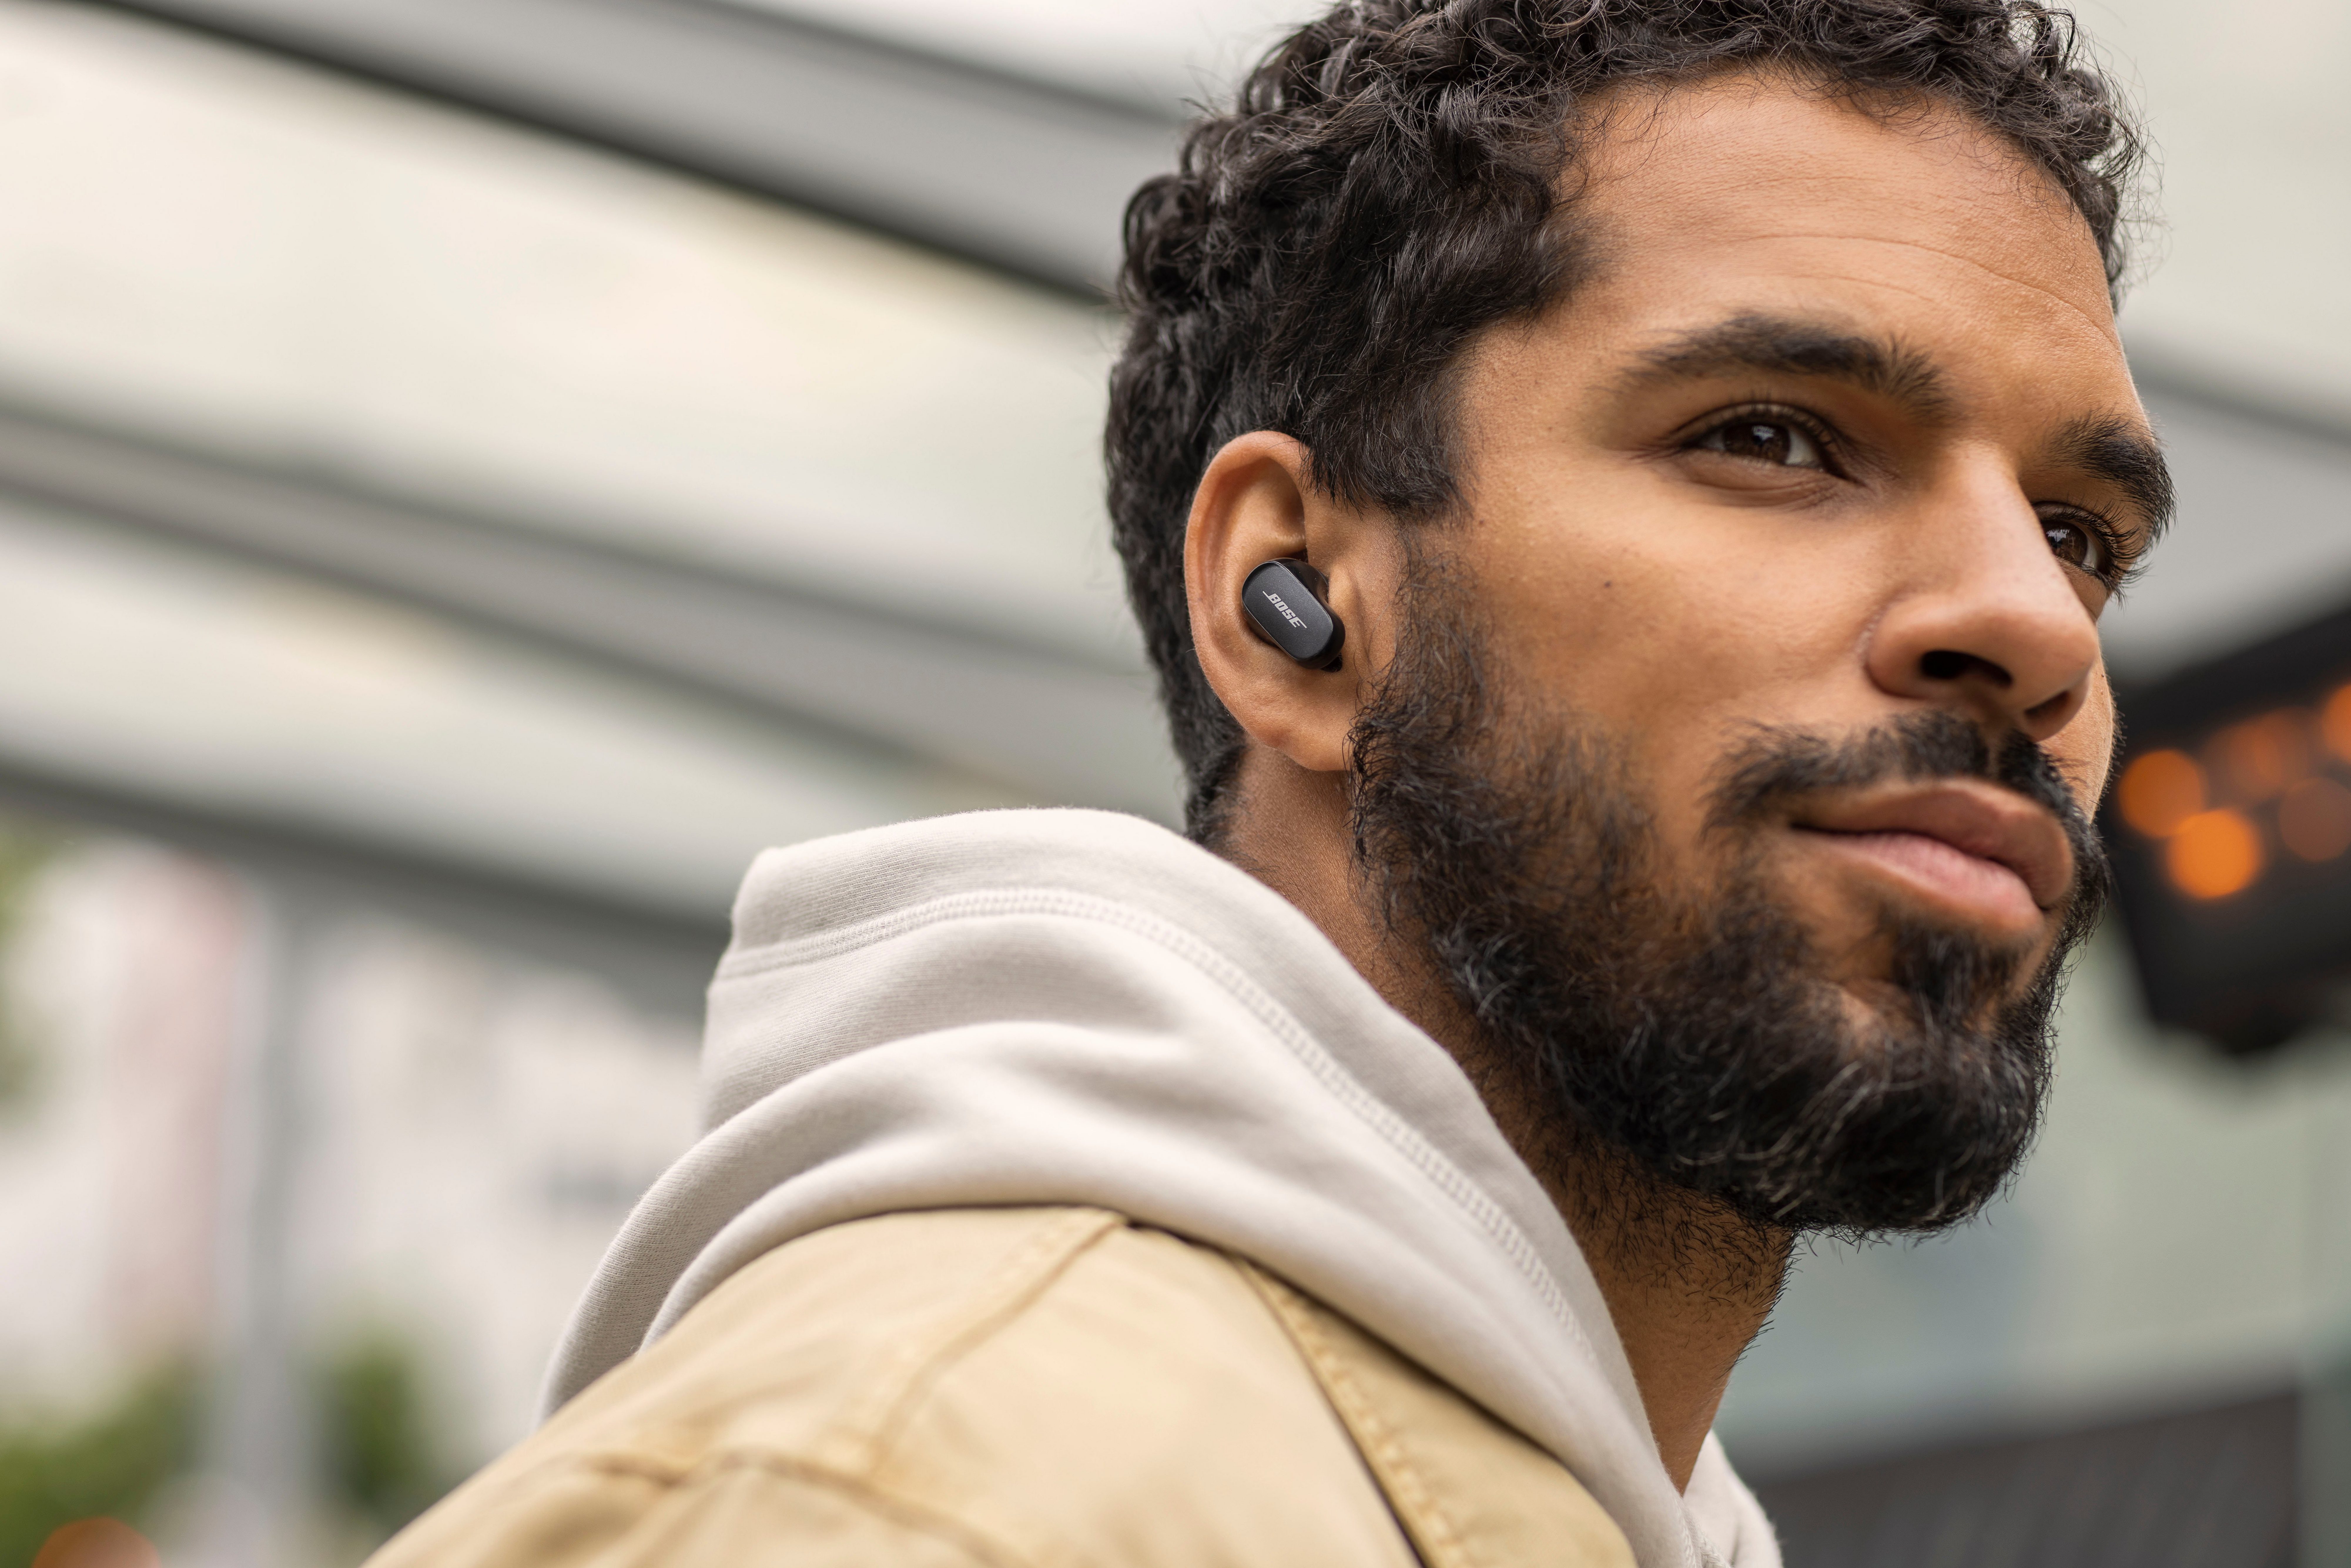 Bose QuietComfort® Earbuds II personalisiertem kabellose Musik, und für In-Ear-Kopfhörer mit Klang) Lärmreduzierung Noise-Cancelling, integrierte (Freisprechfunktion, black wireless Anrufe Bluetooth, In-Ear-Kopfhörer Steuerung